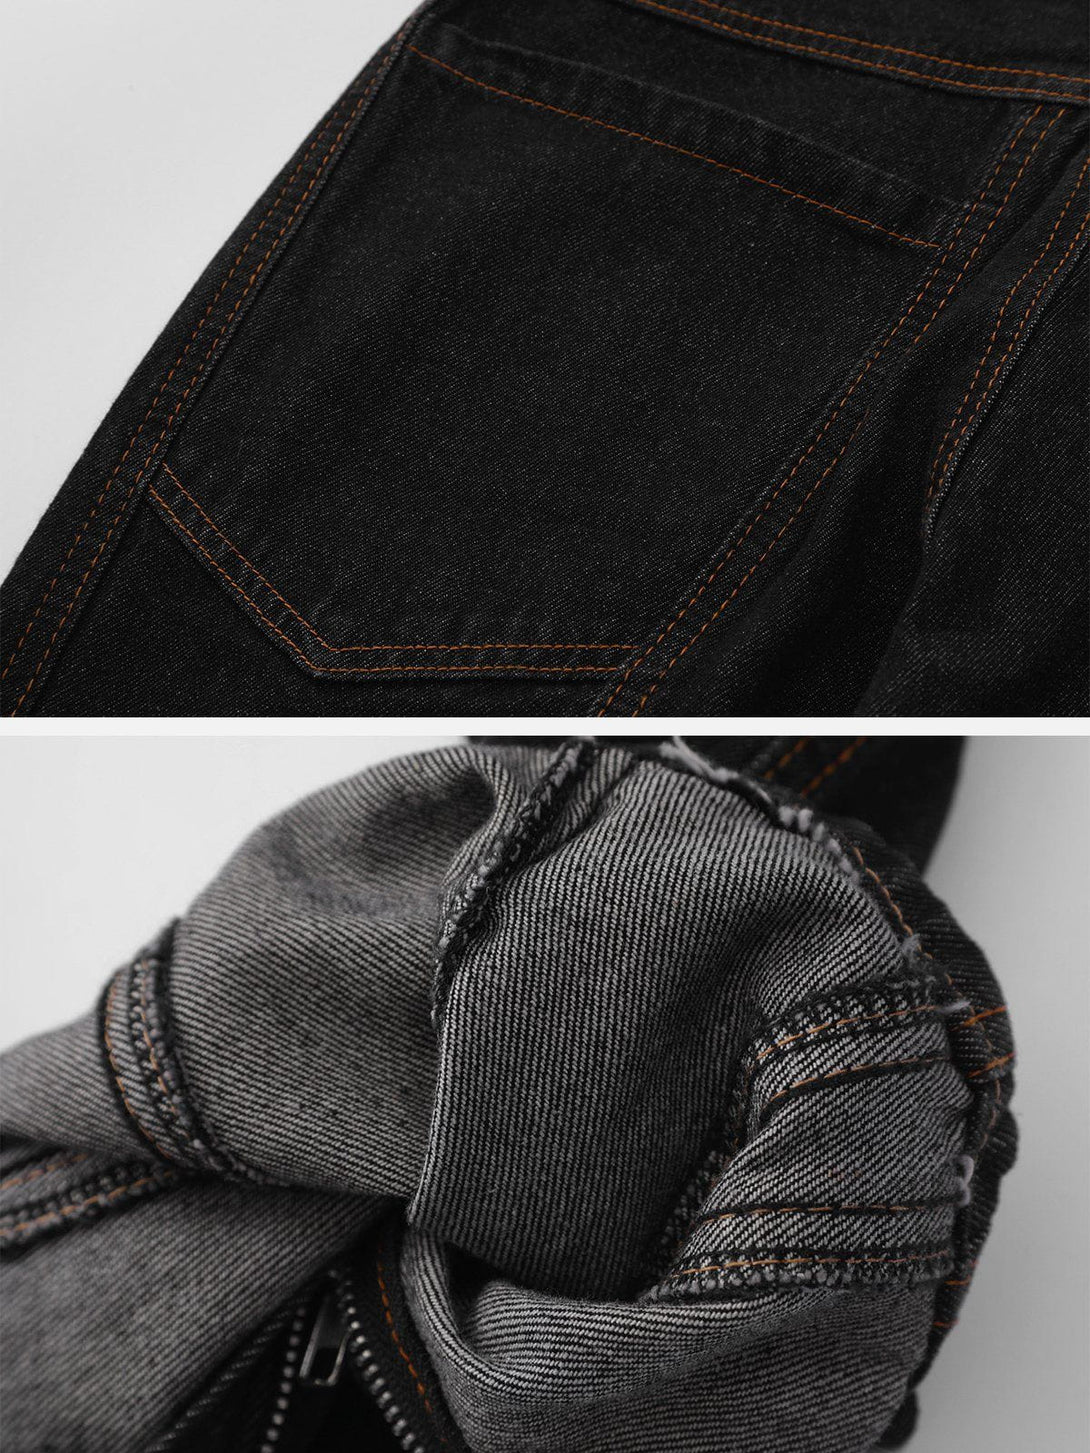 Levefly - Vintage Washed Pocket Jeans - Streetwear Fashion - levefly.com